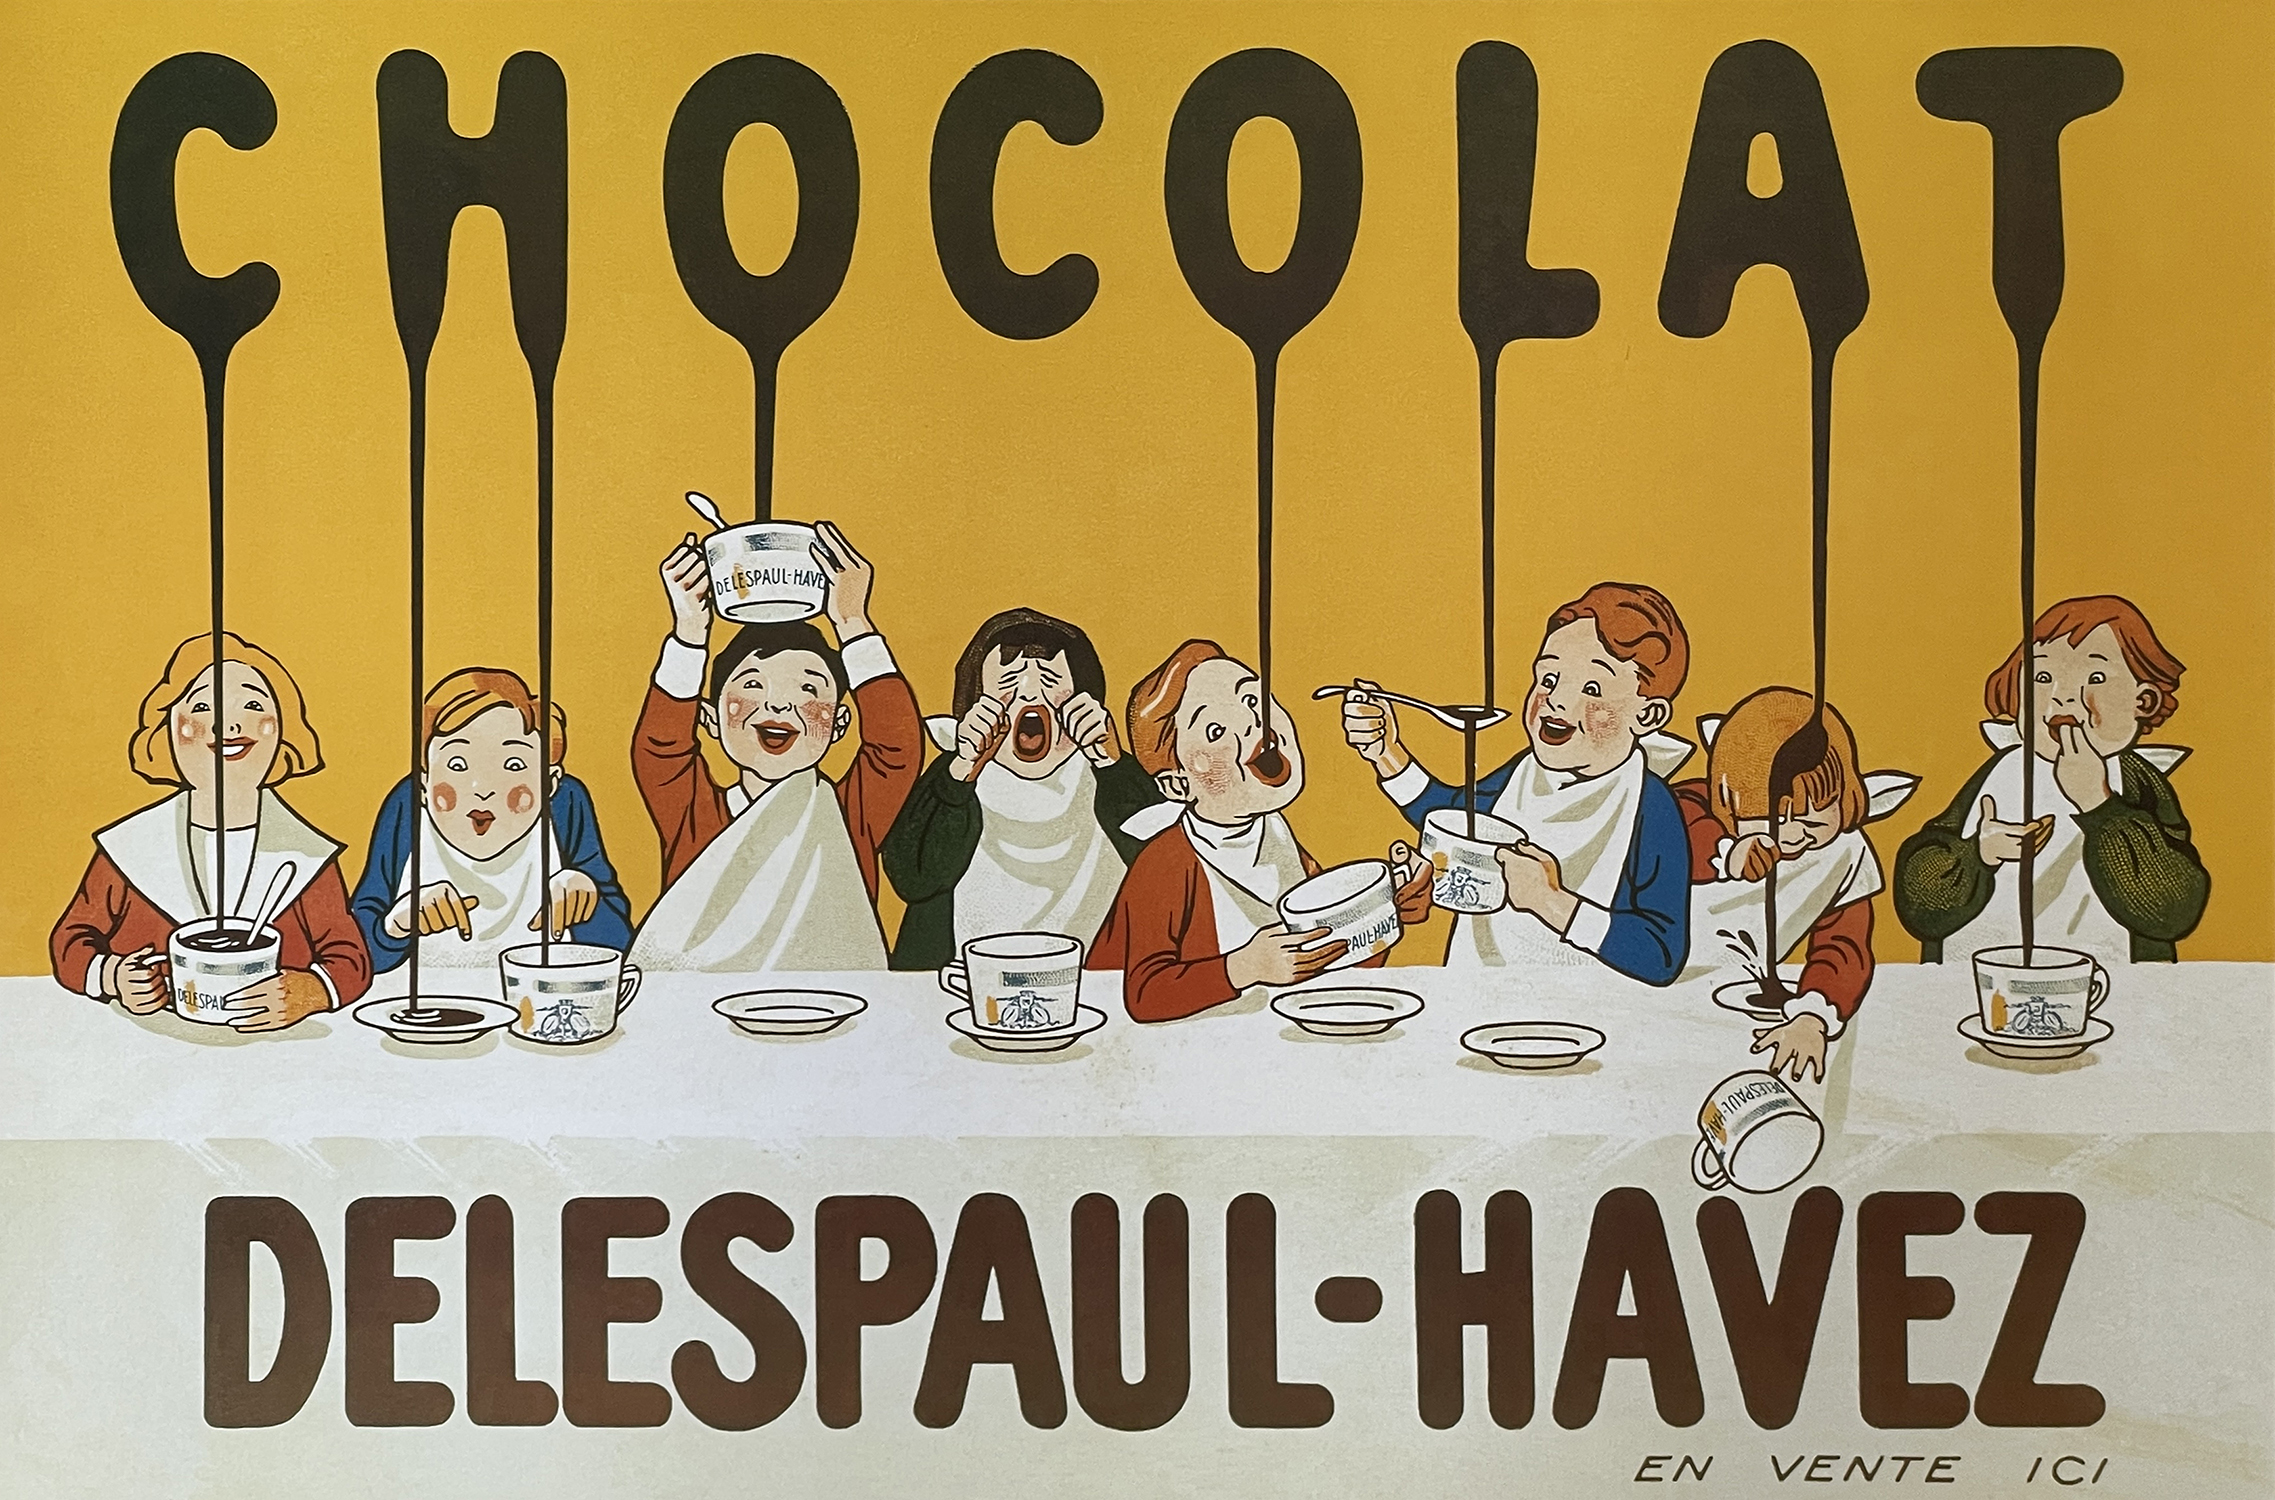 Chocolat Delespaul-Havez